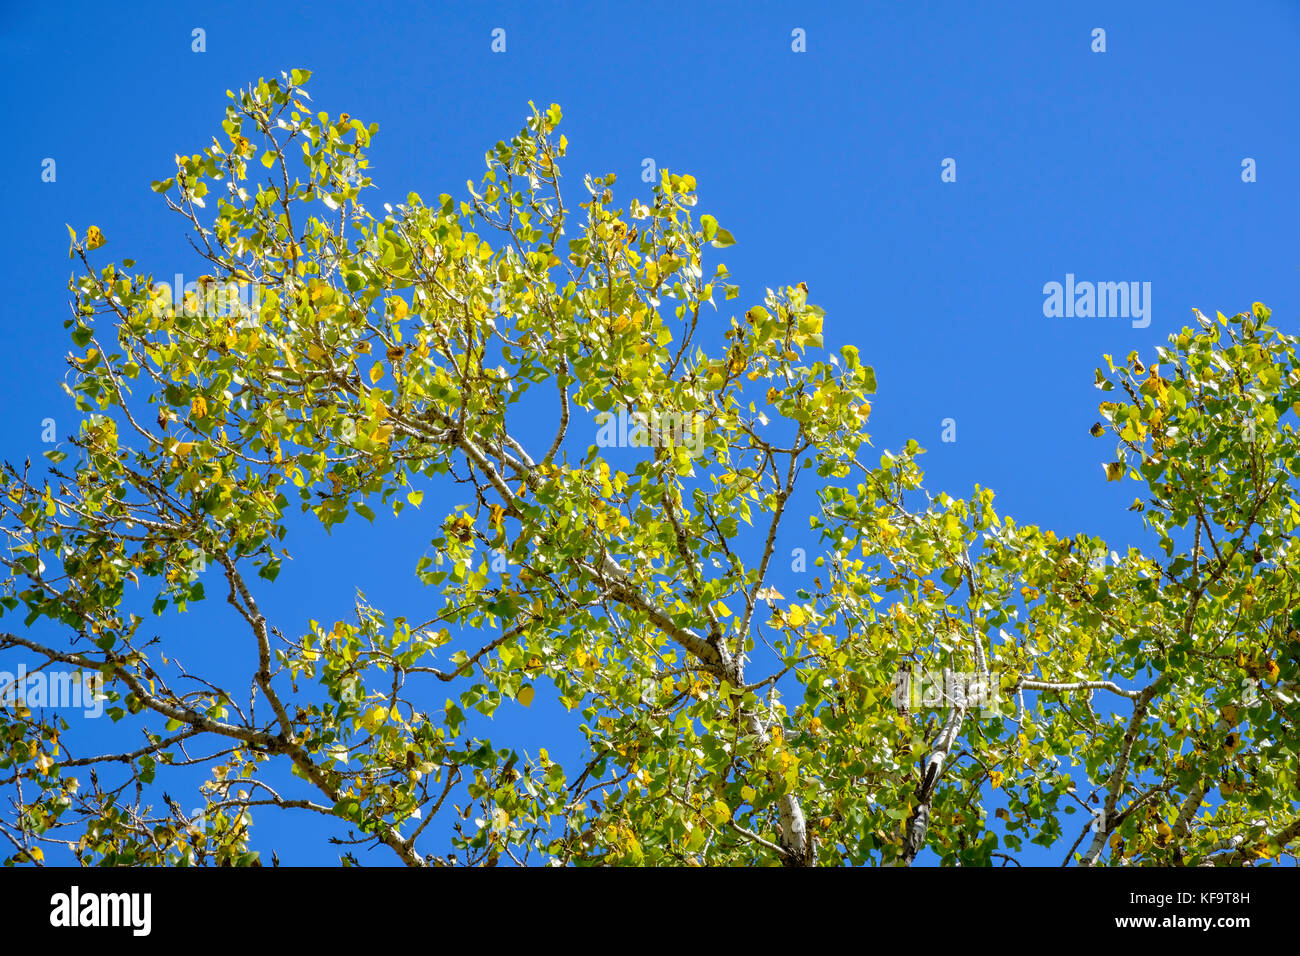 Le sommet d'un grand arbre de coton de l'est mature au début de l'automne contre un ciel bleu. Oklahoma, États-Unis. Banque D'Images